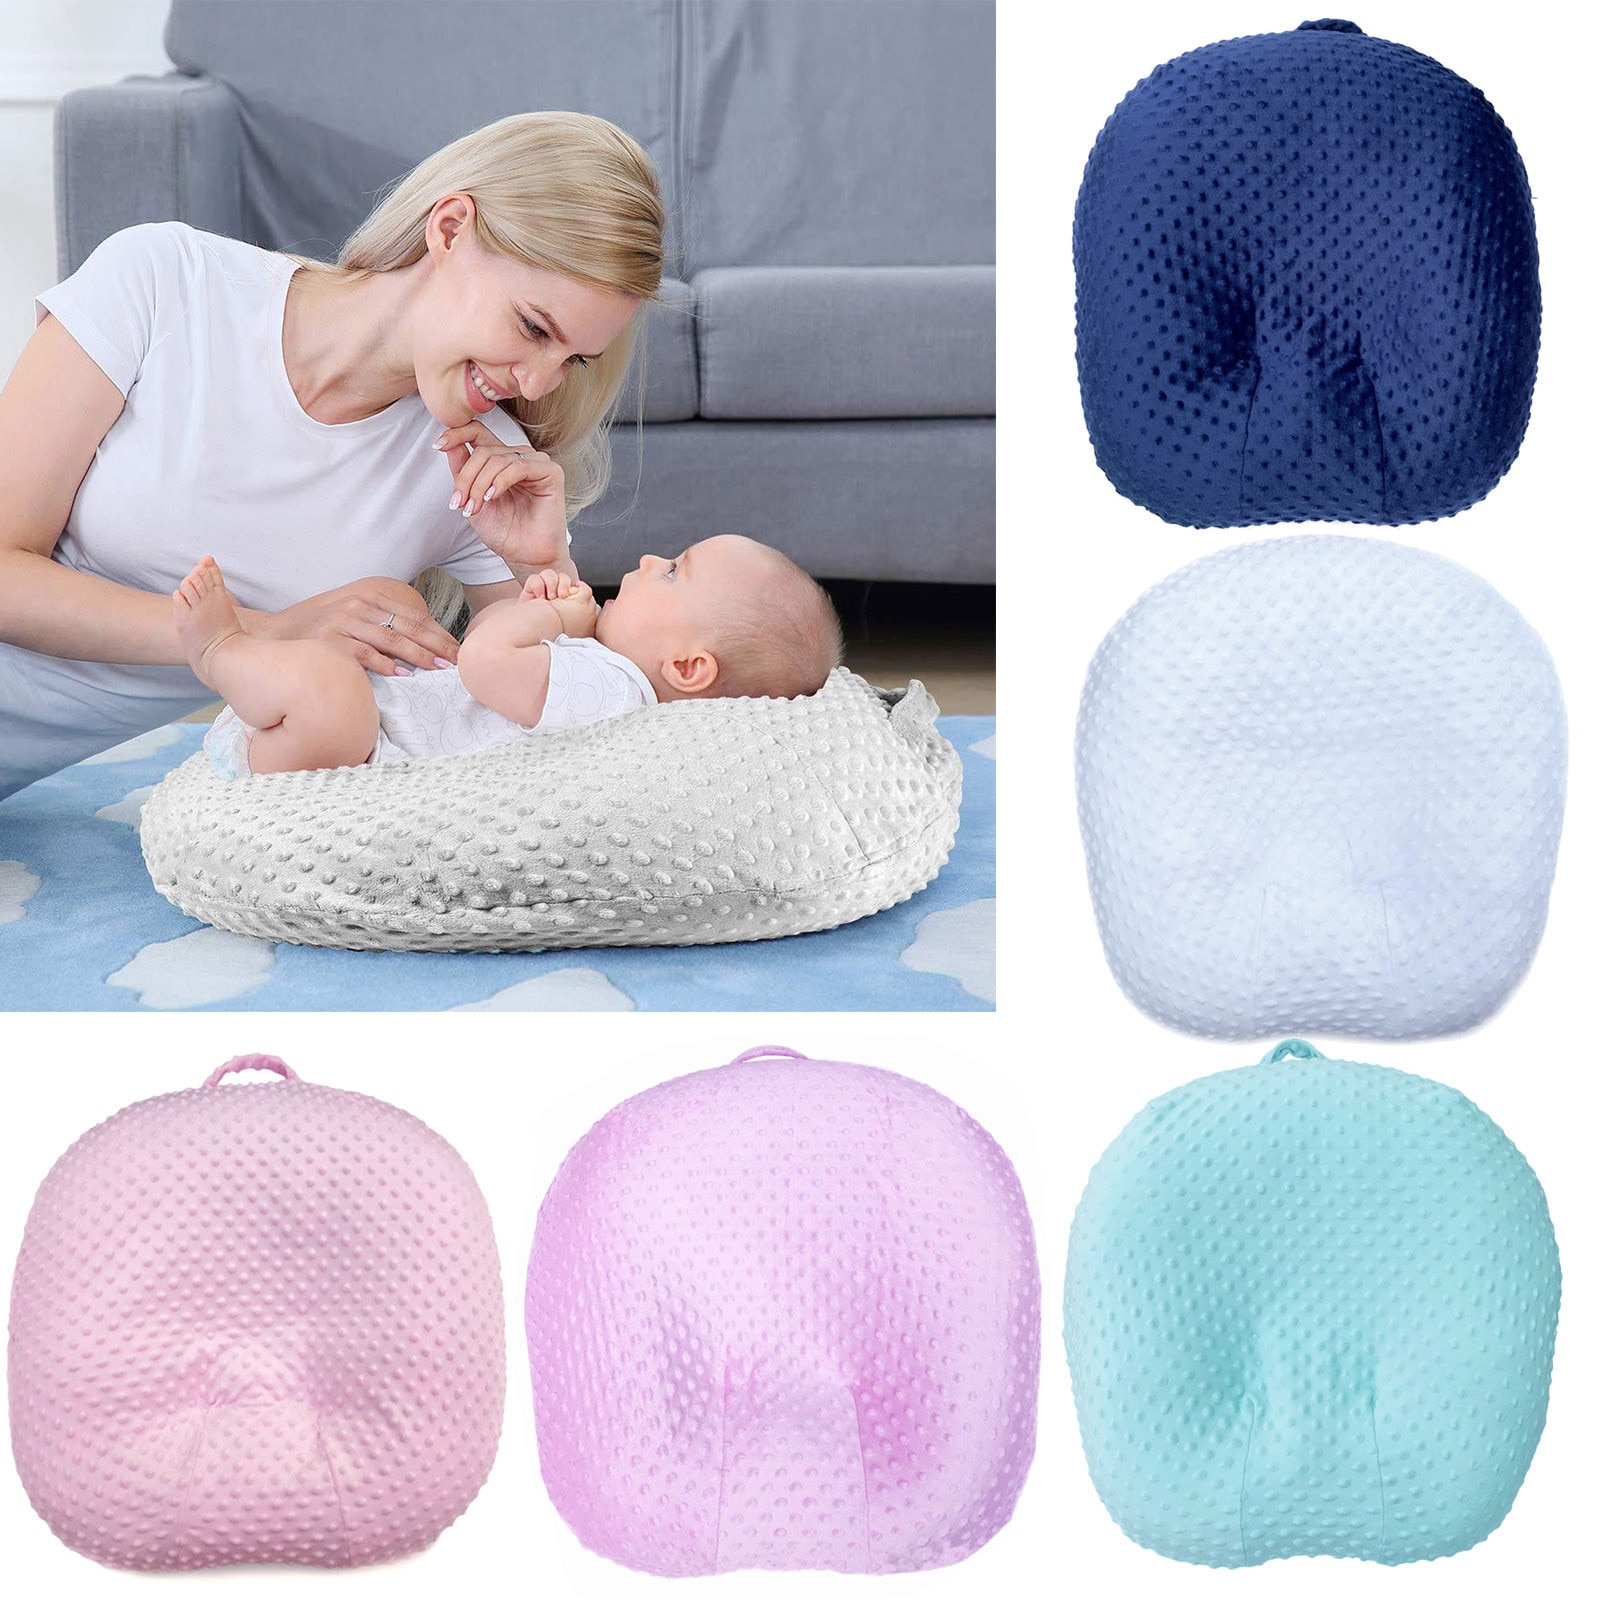 Pasgeboren Baby Lounger Kussensloop Verwijderbare Cover Voor Baby Kussen Wasbaar Lounger Kussen Verpleging Hoes Protector Cojines # L3